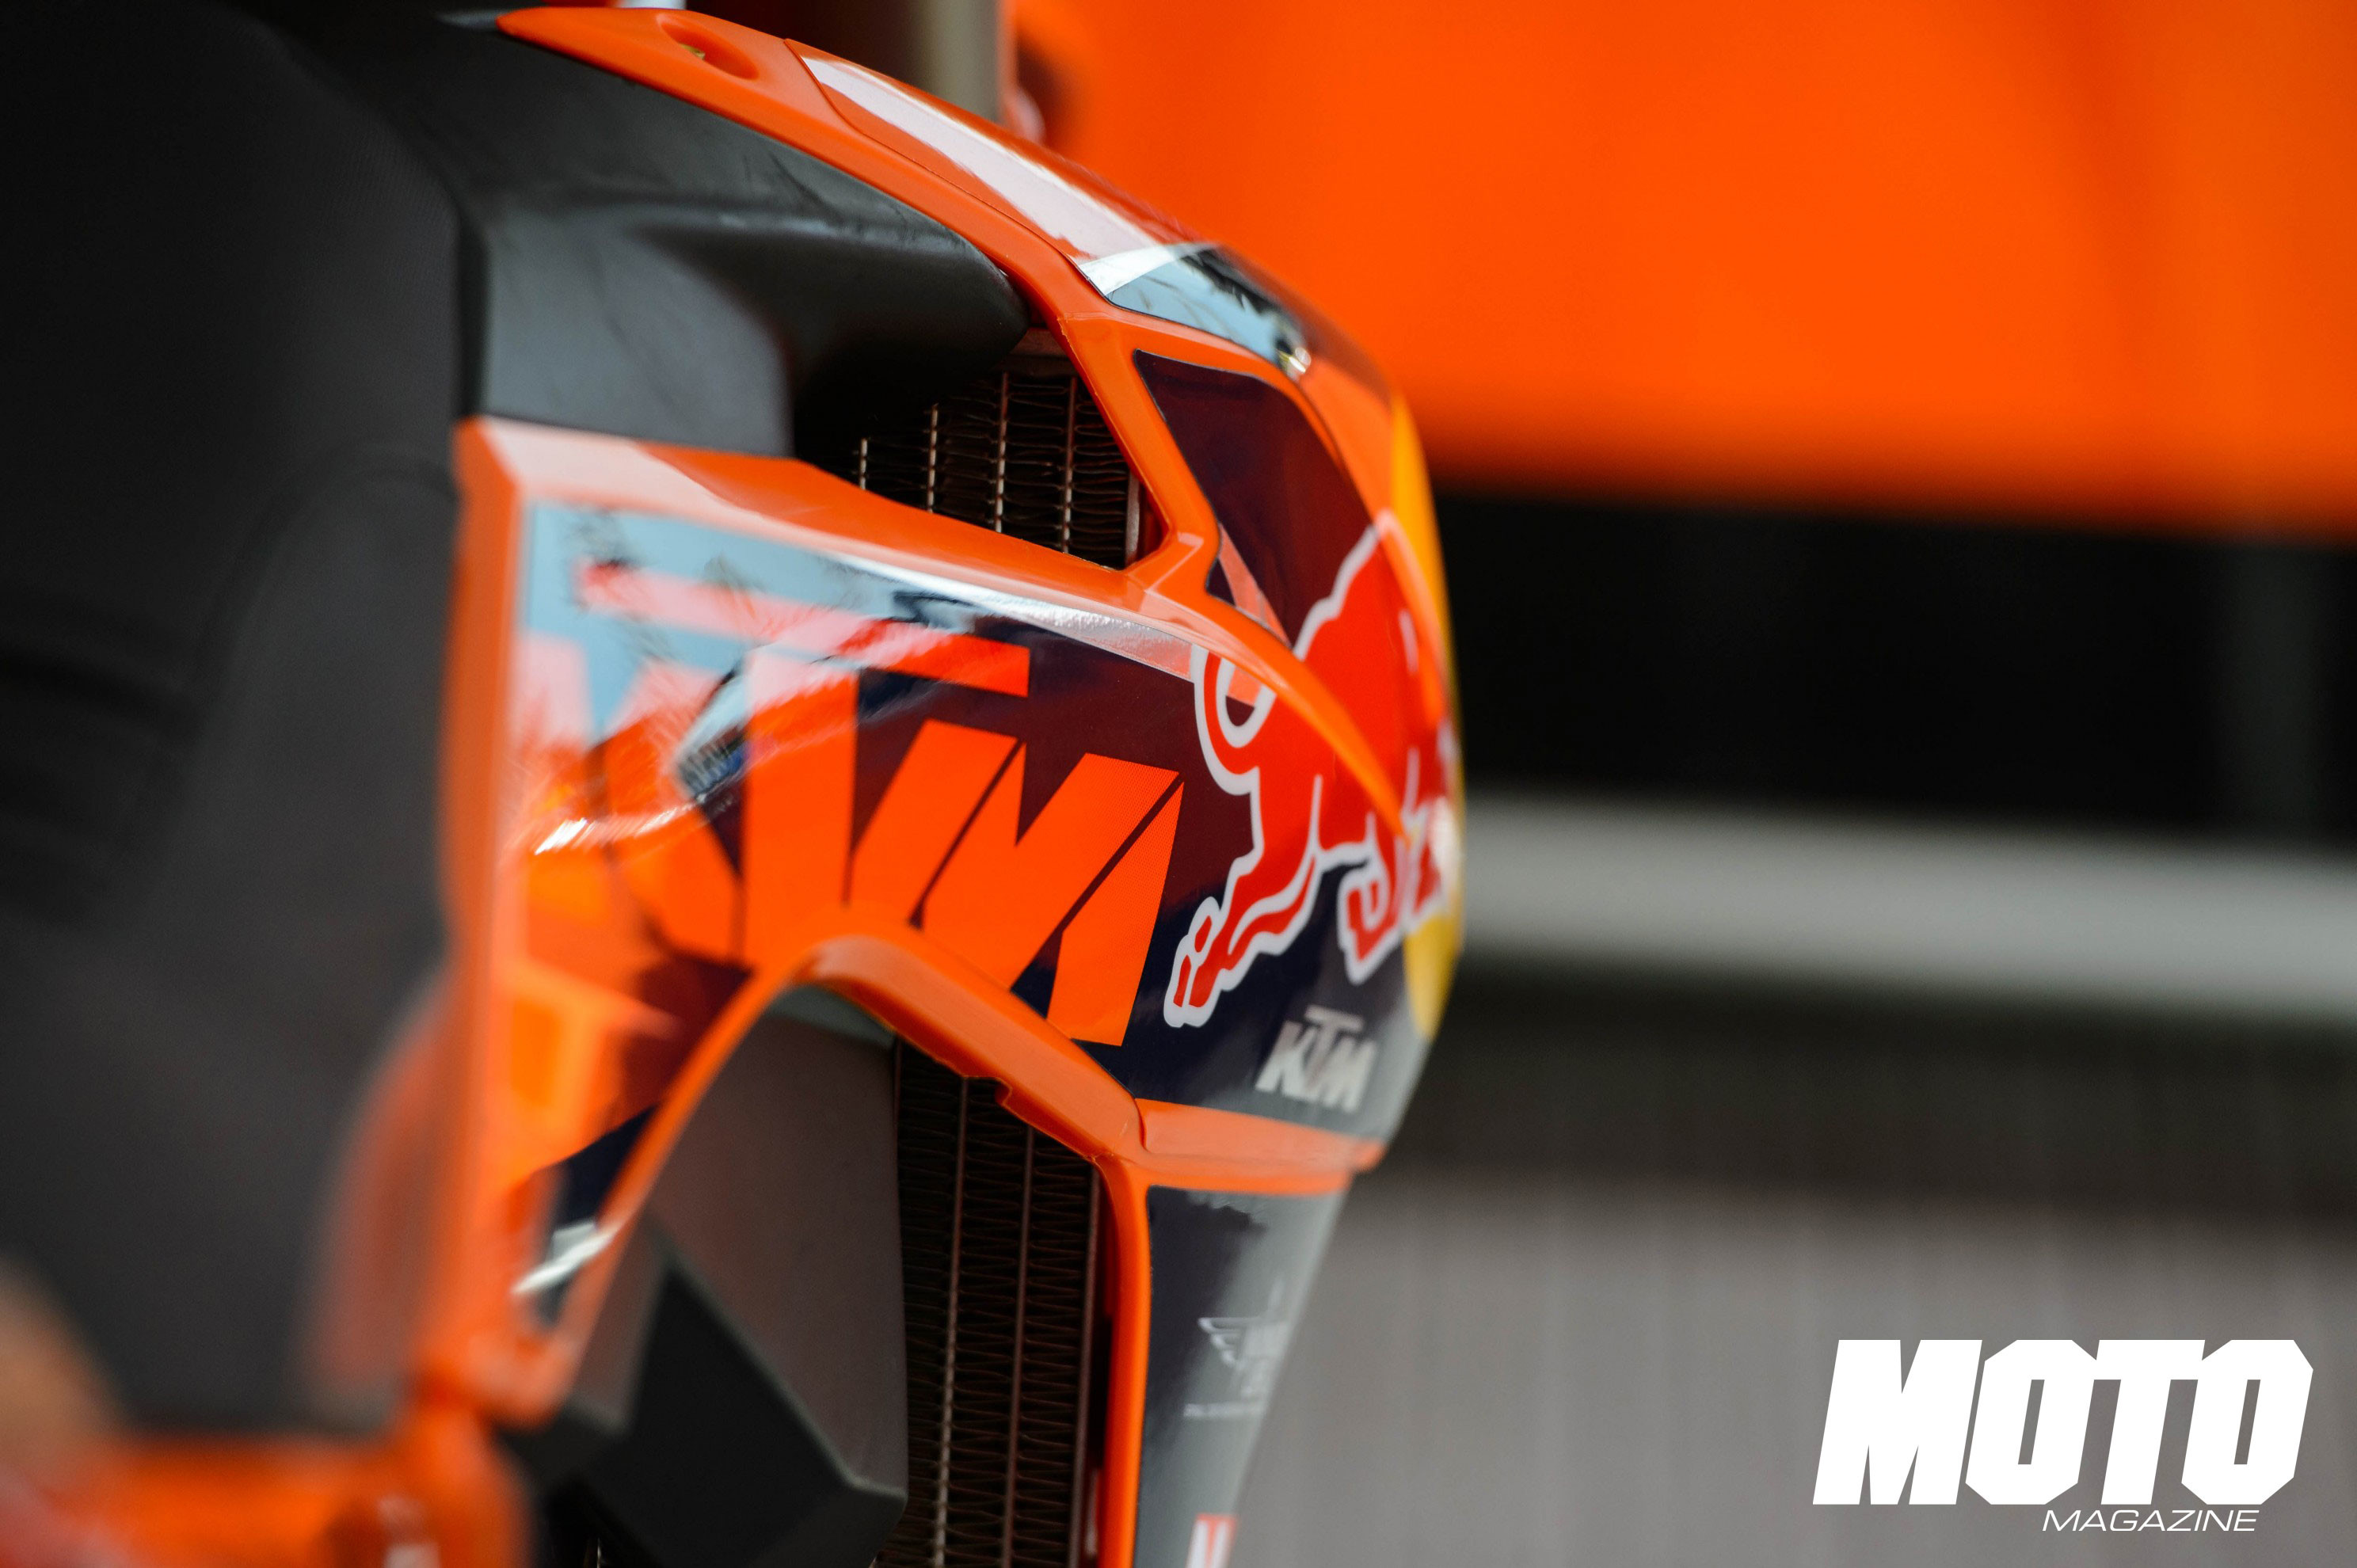 ktm logo hd fond d'écran,casque,équipement de protection individuelle,orange,équipement de sport,casque de moto